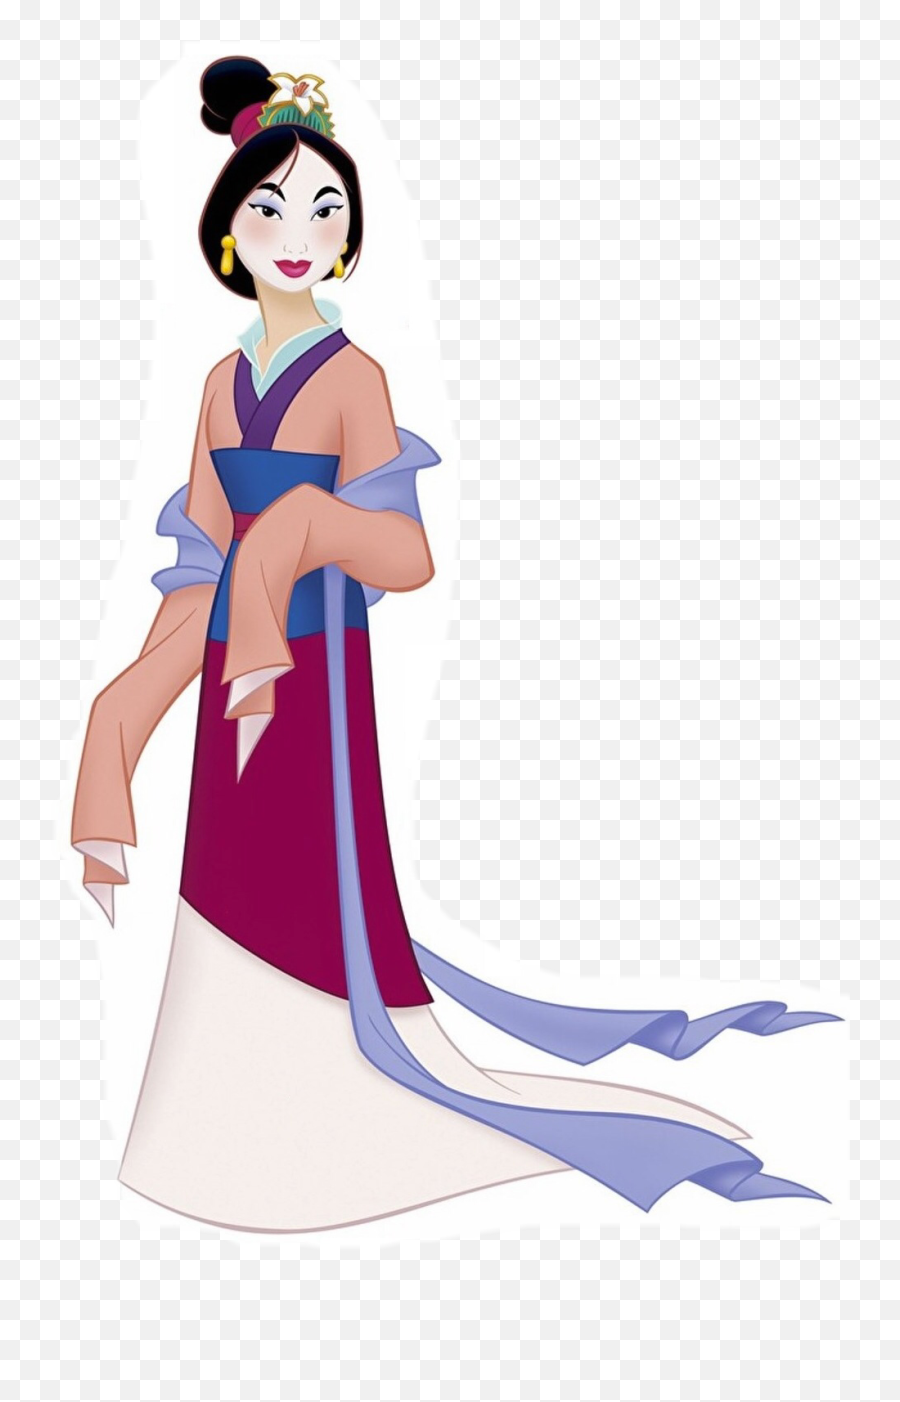 Princess Mulan Transparent Cartoon - Princess Mulan Disney Png,Mulan Transparent